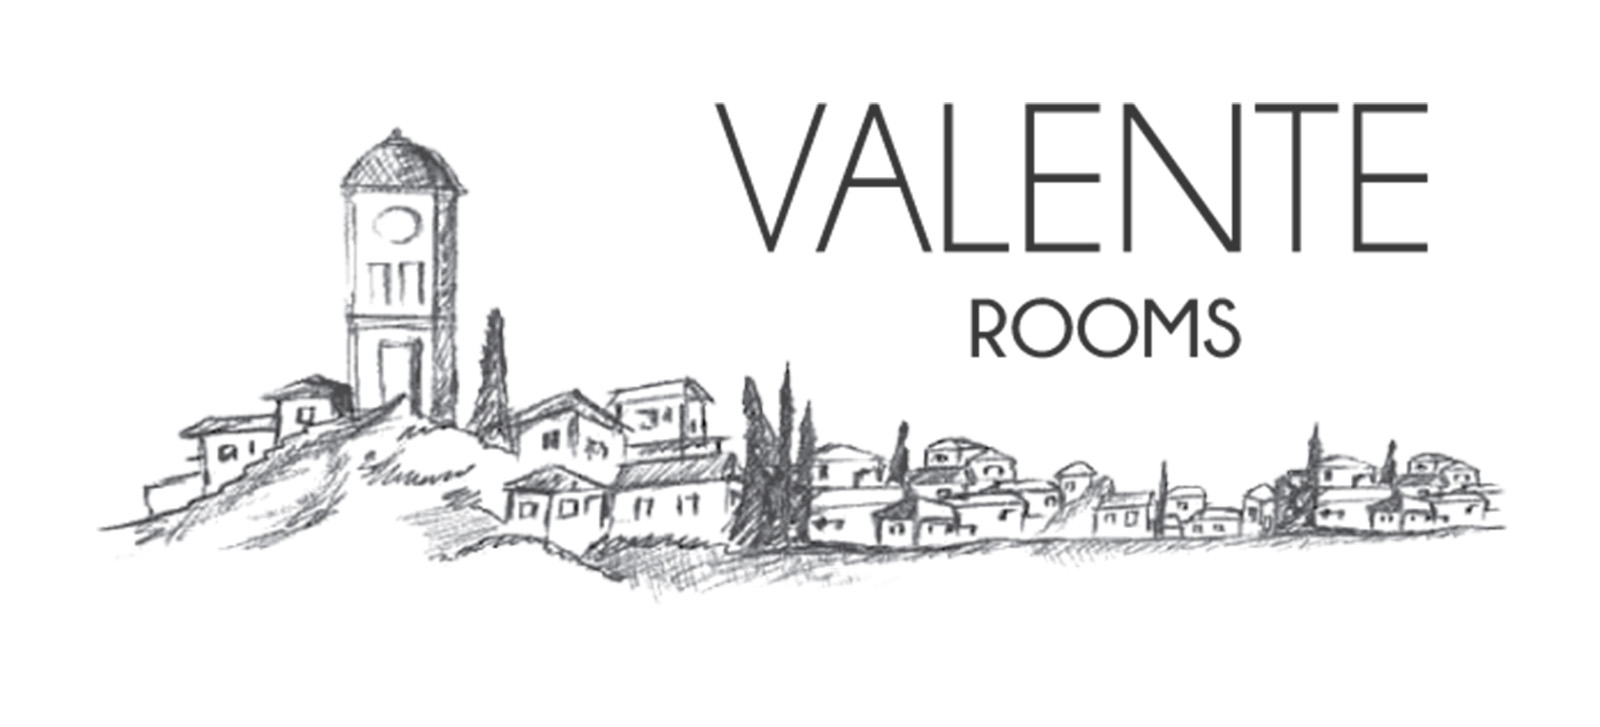 Valente Rooms Poros